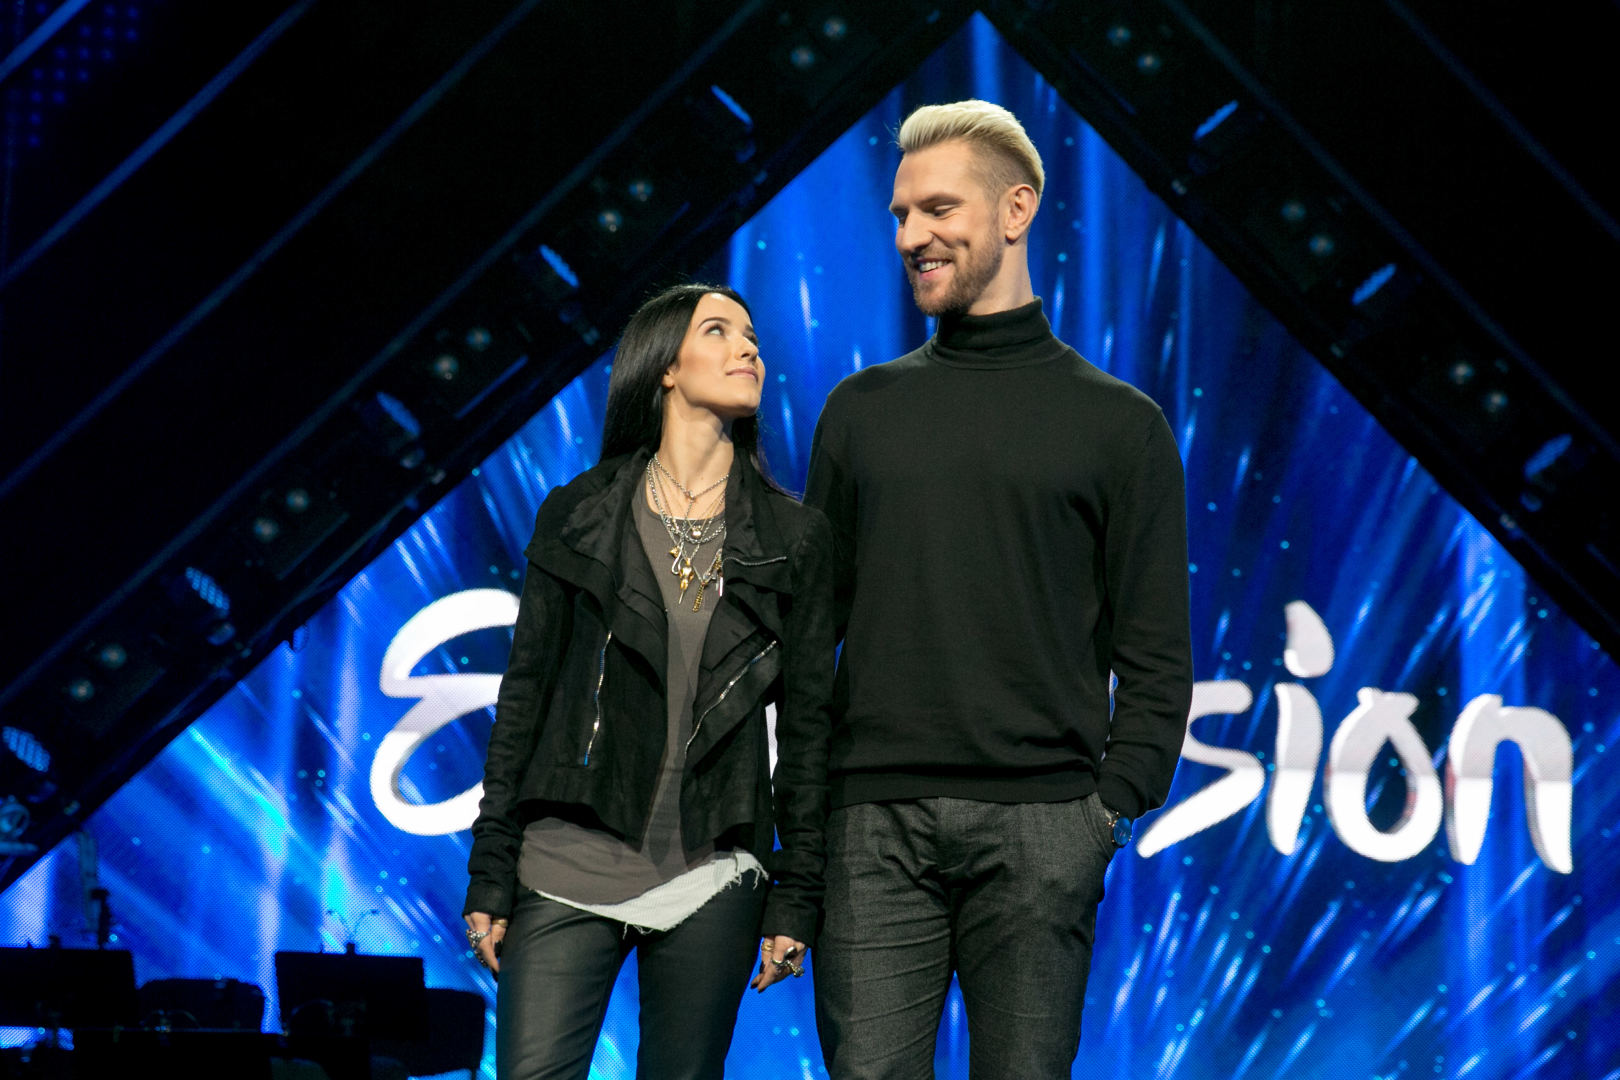 Λιθουανία 2018: Στις 6 Ιανουαρίου ξεκινάει το Eurovizijos atranka